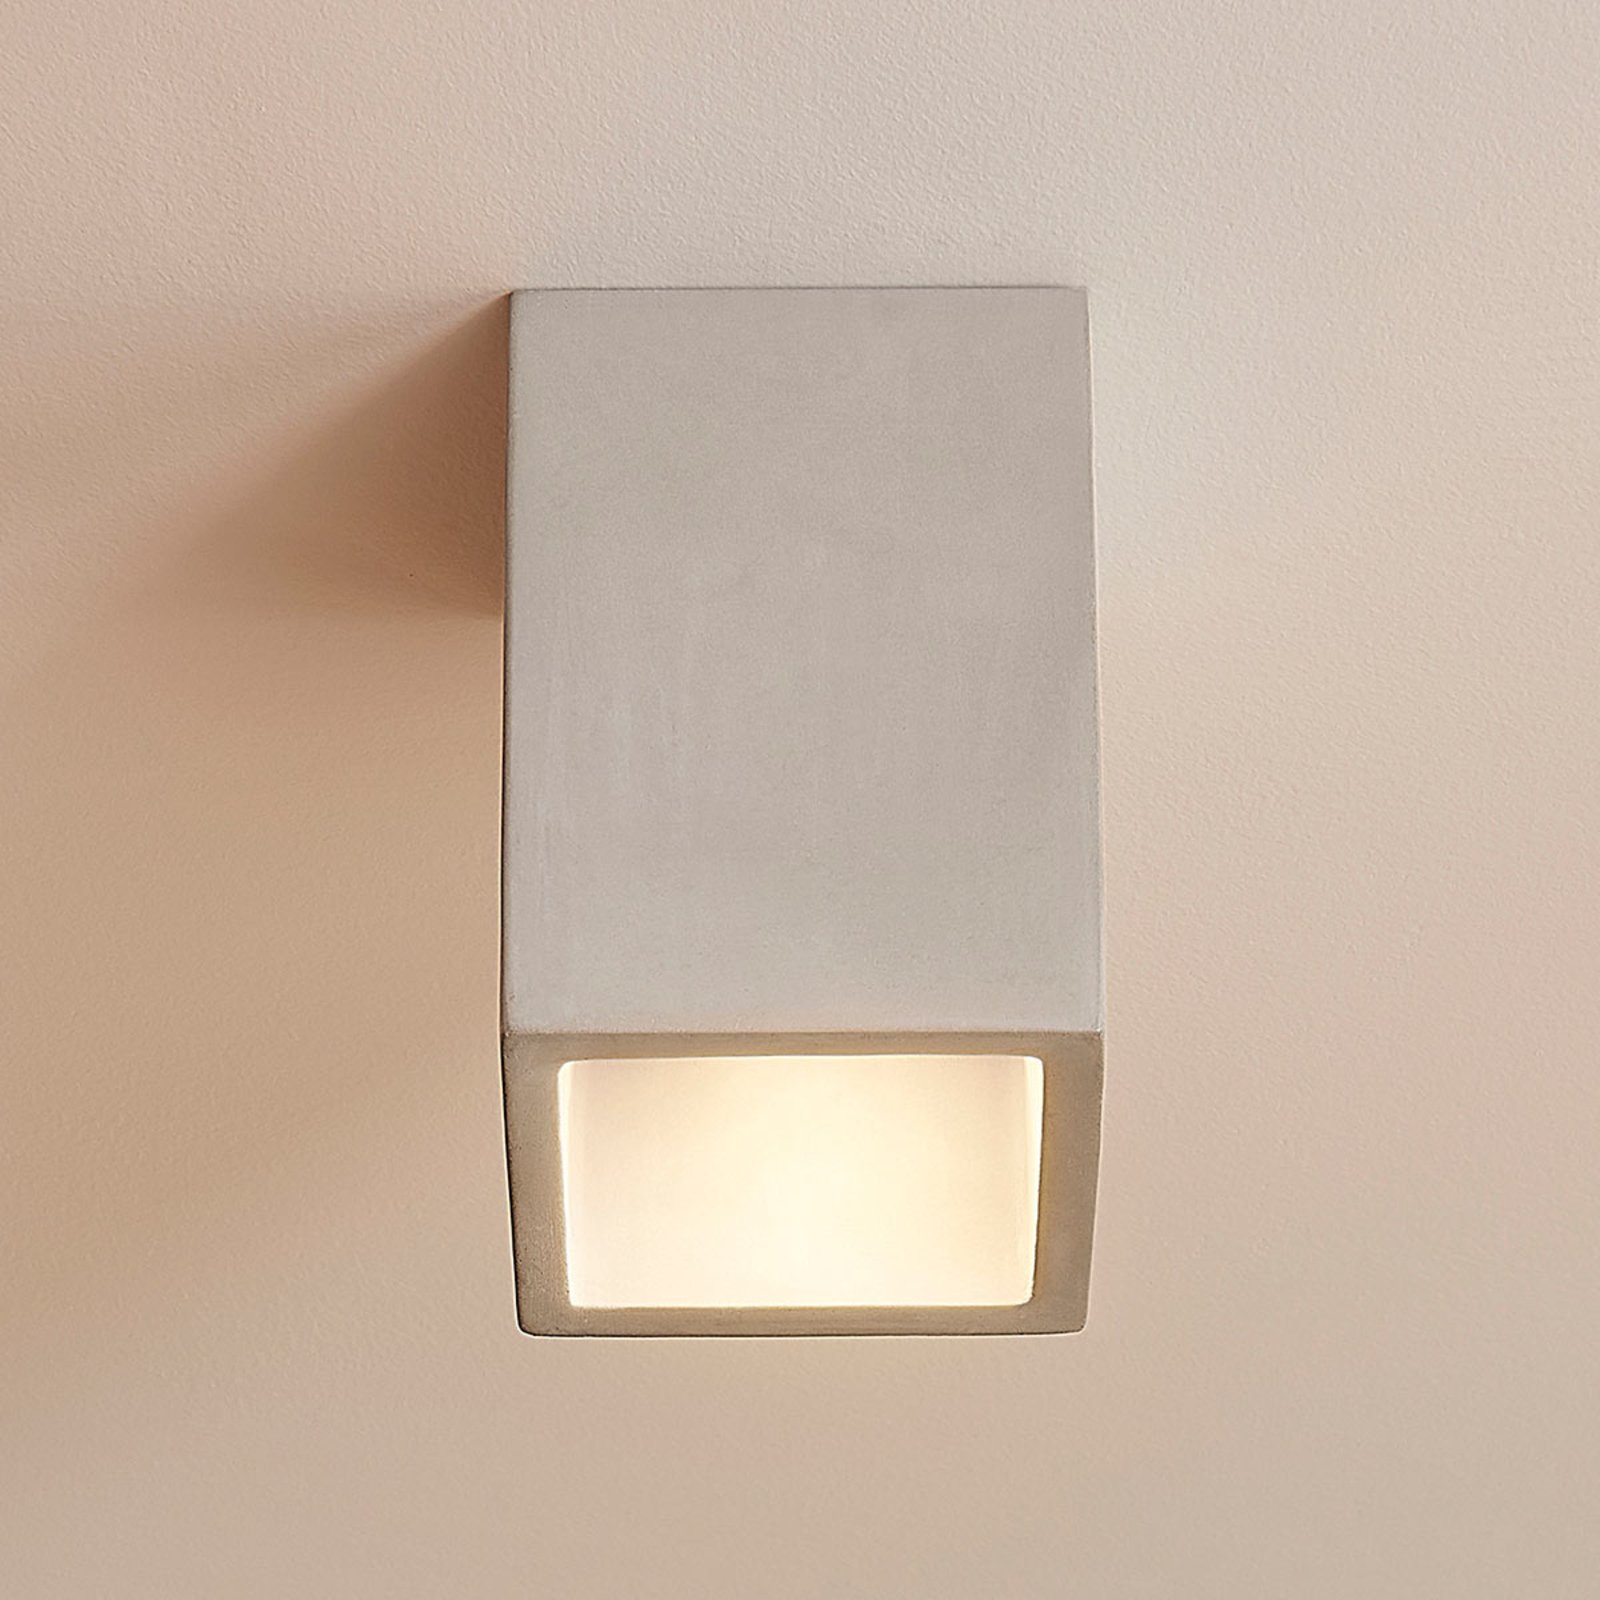 Concrete ceiling light Gerda with an angular shape